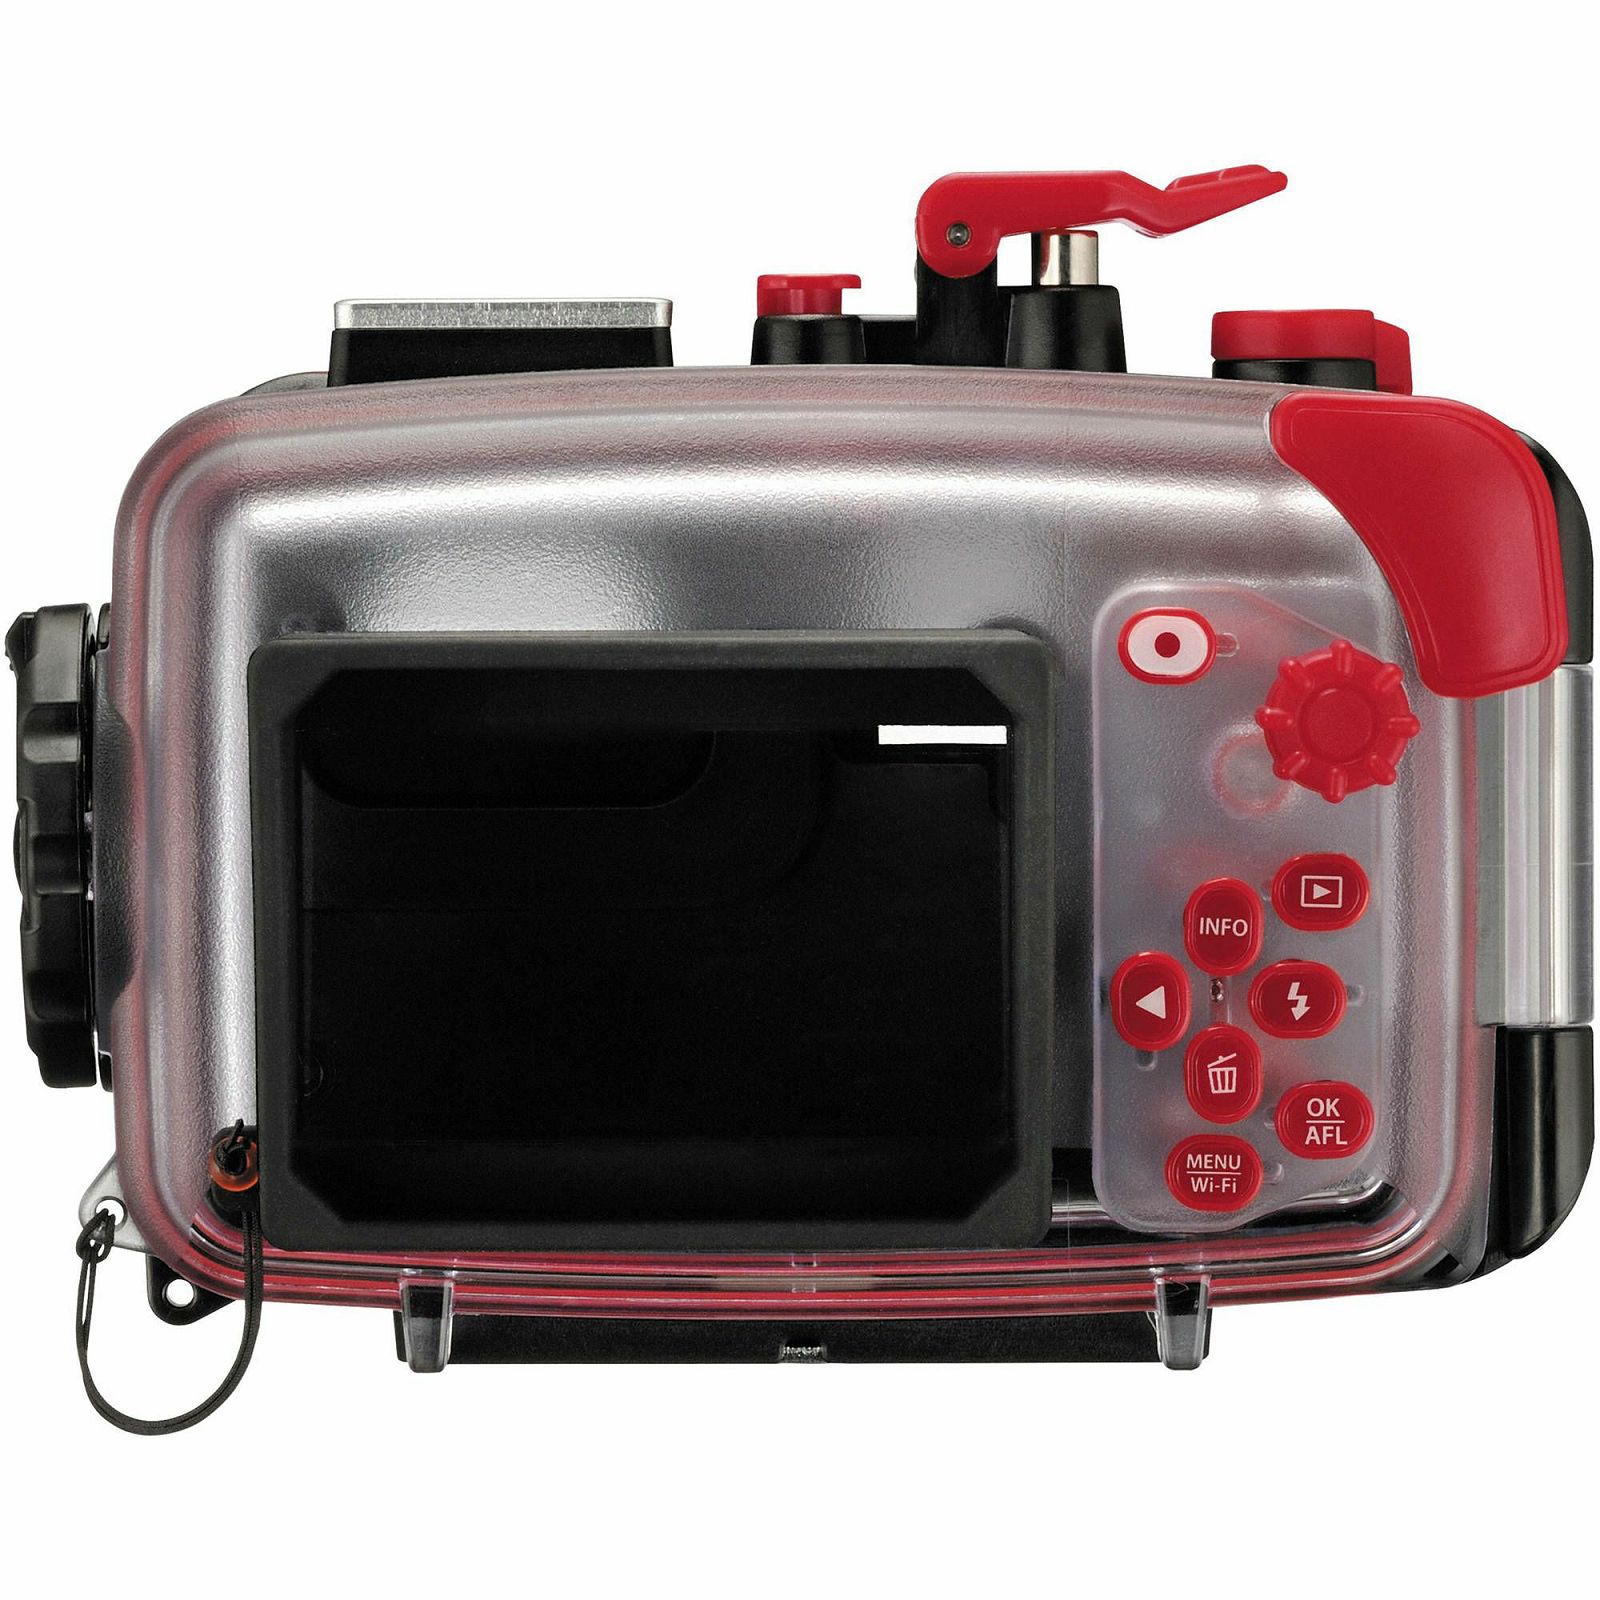 Olympus PT-057 Underwater Case for TG-860/TG-850 podvodno kučište za digitalni kompaktni fotoaparat V6300650E000